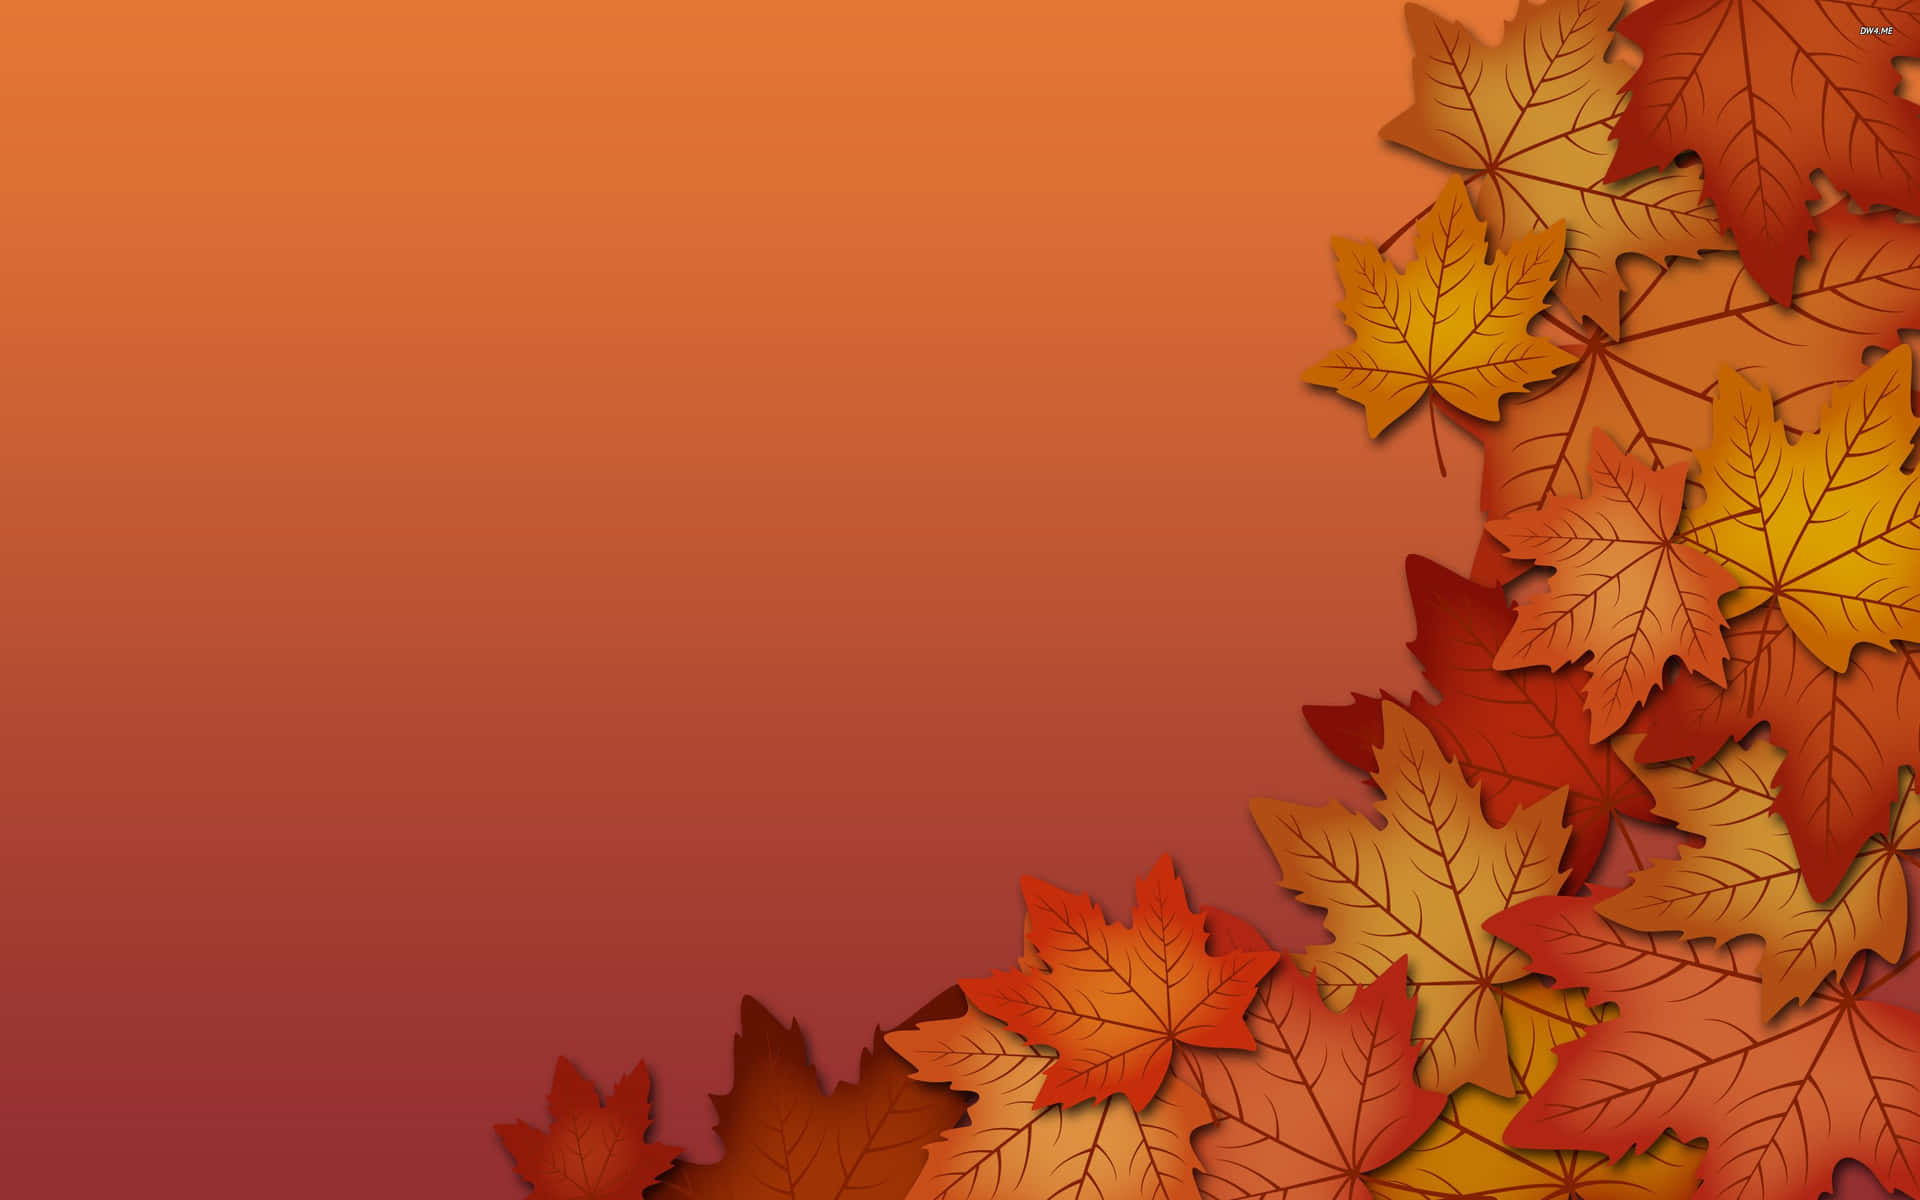 Tag et øjeblik for at beundrede skønheden af ​​efterårets farver. Wallpaper